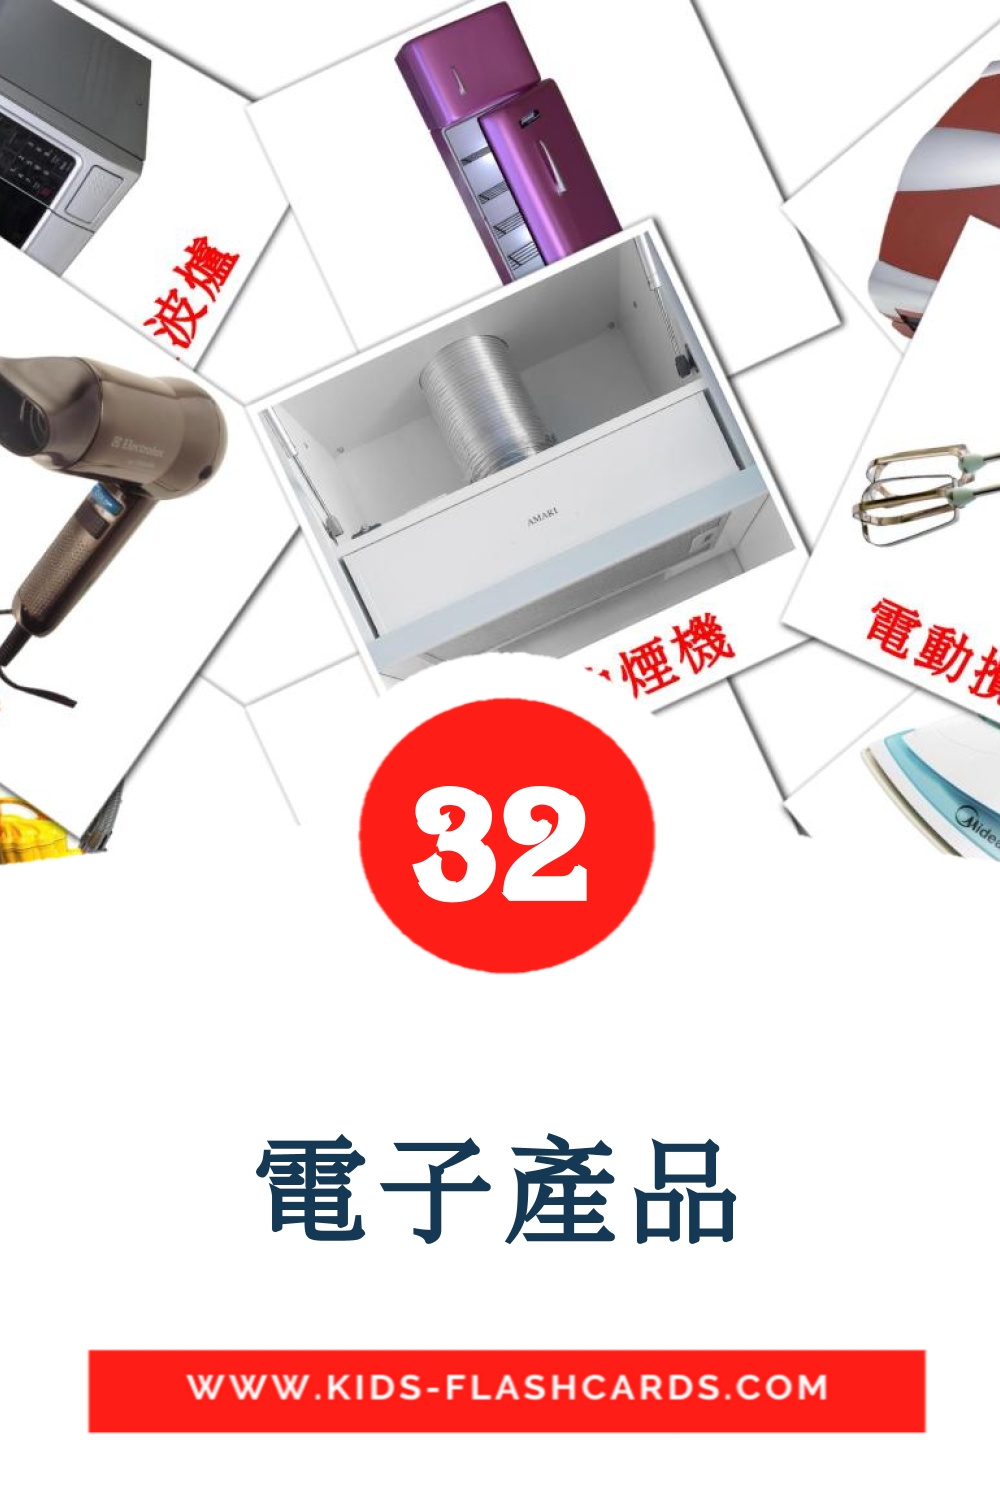 32 tarjetas didacticas de 電子產品 para el jardín de infancia en chino(tradicional)